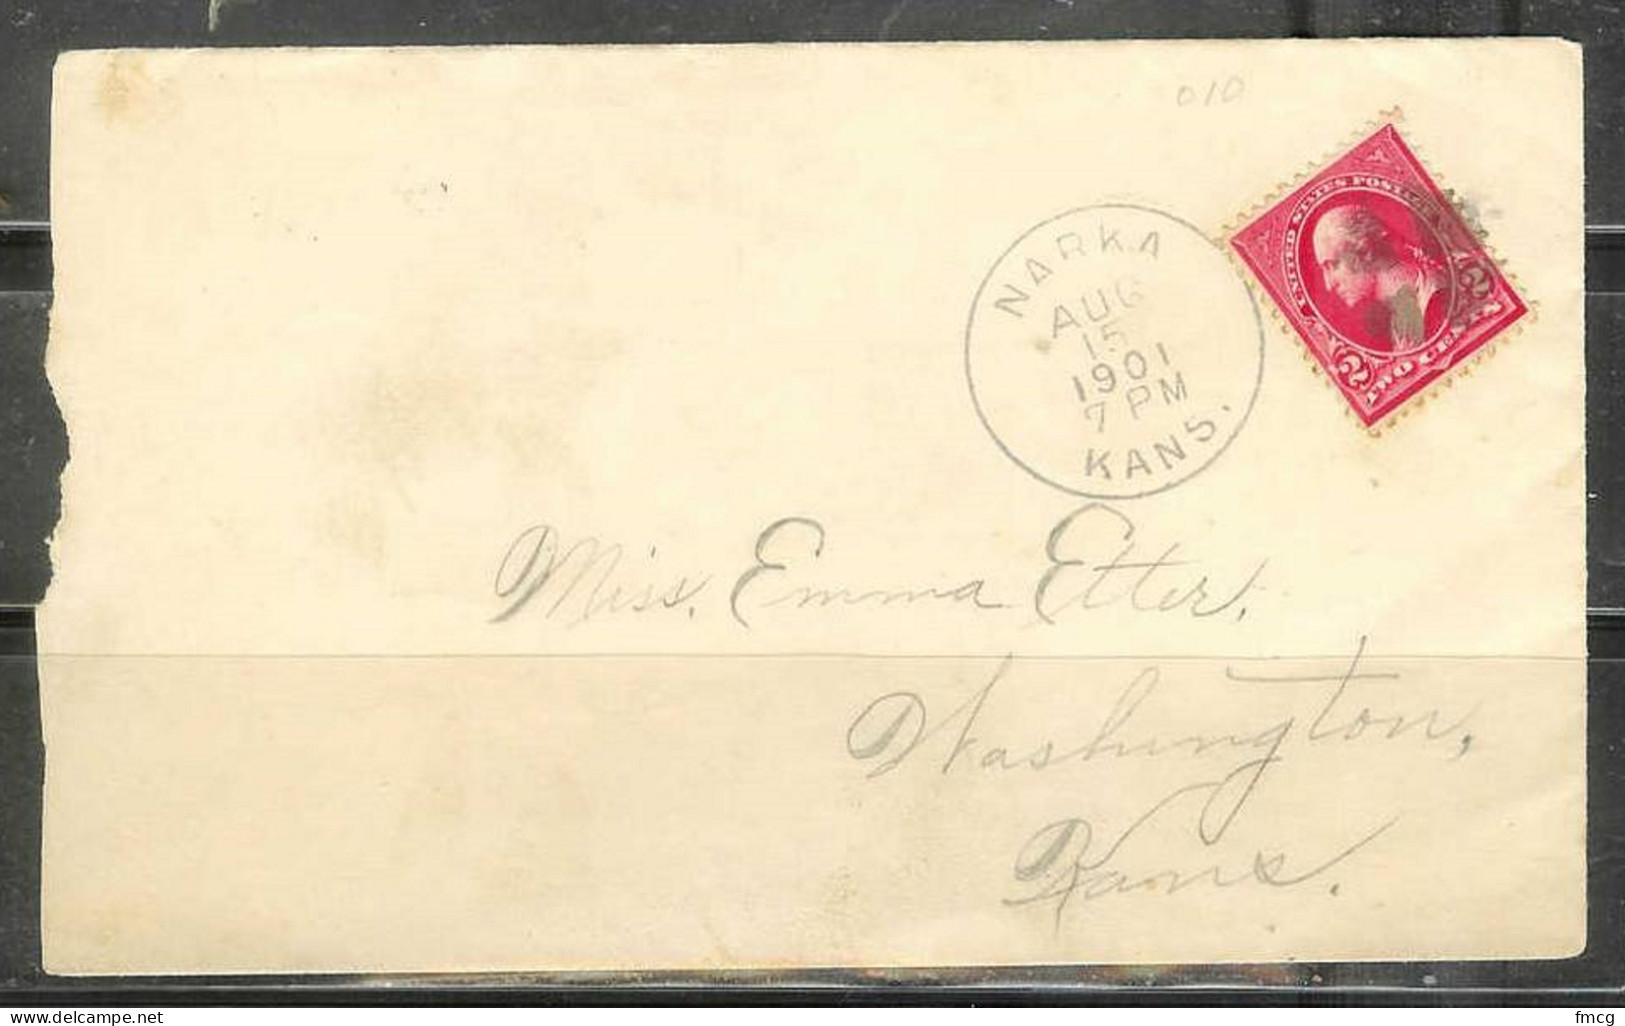 1901 Narka Kansas Aug 15, 2 Cent Washington Stamp - Covers & Documents